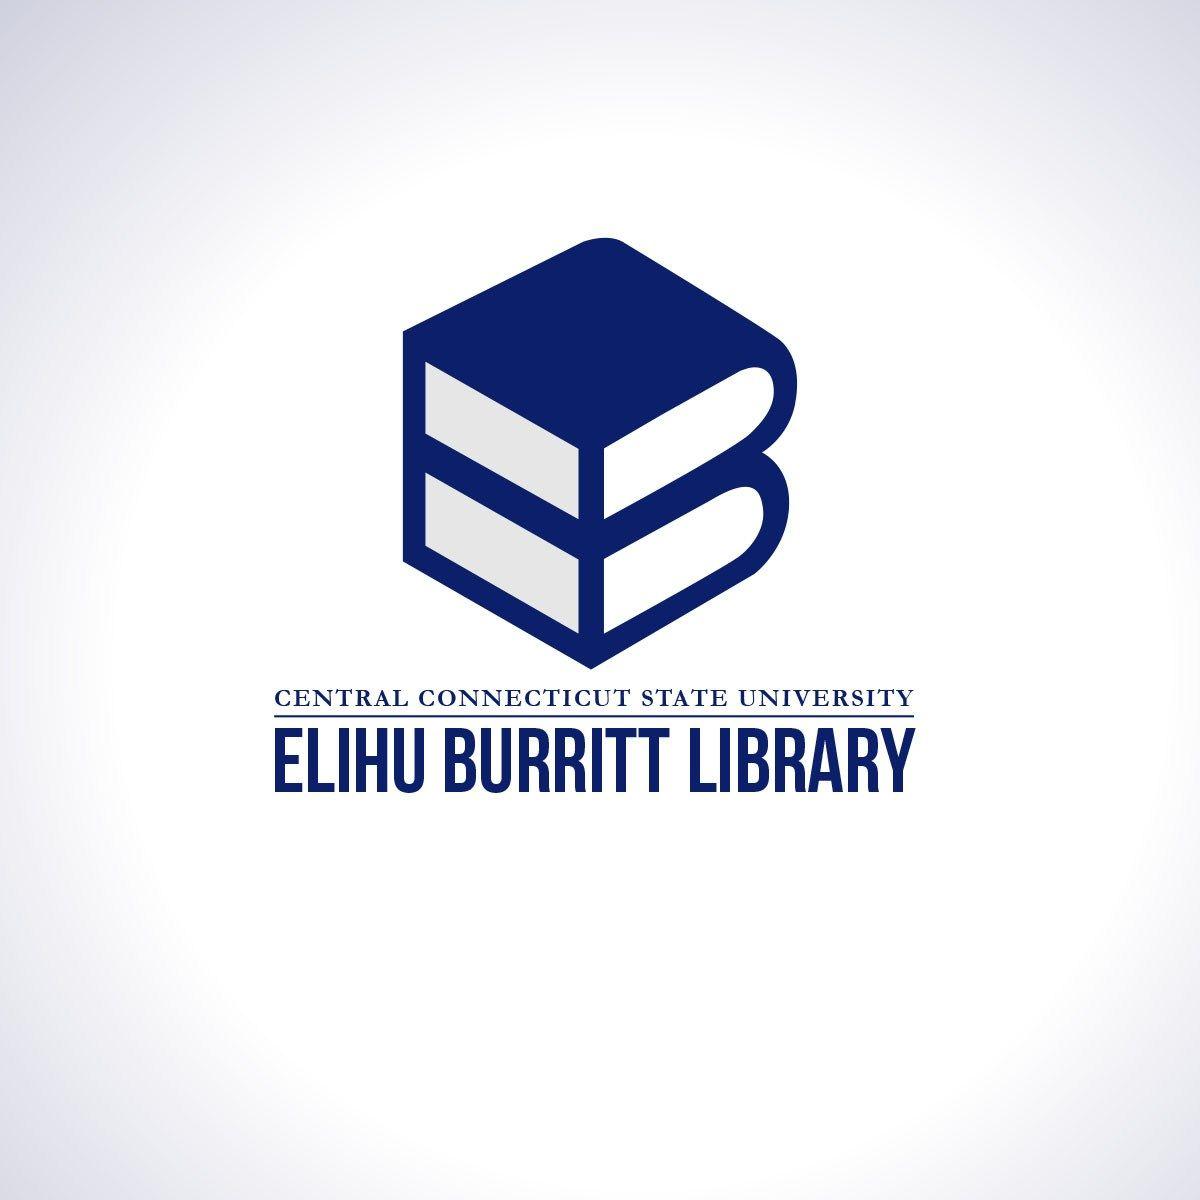 CCSU Logo - Elihu Burritt Library at CCSU reveals new student-designed logo • Ad/Lib